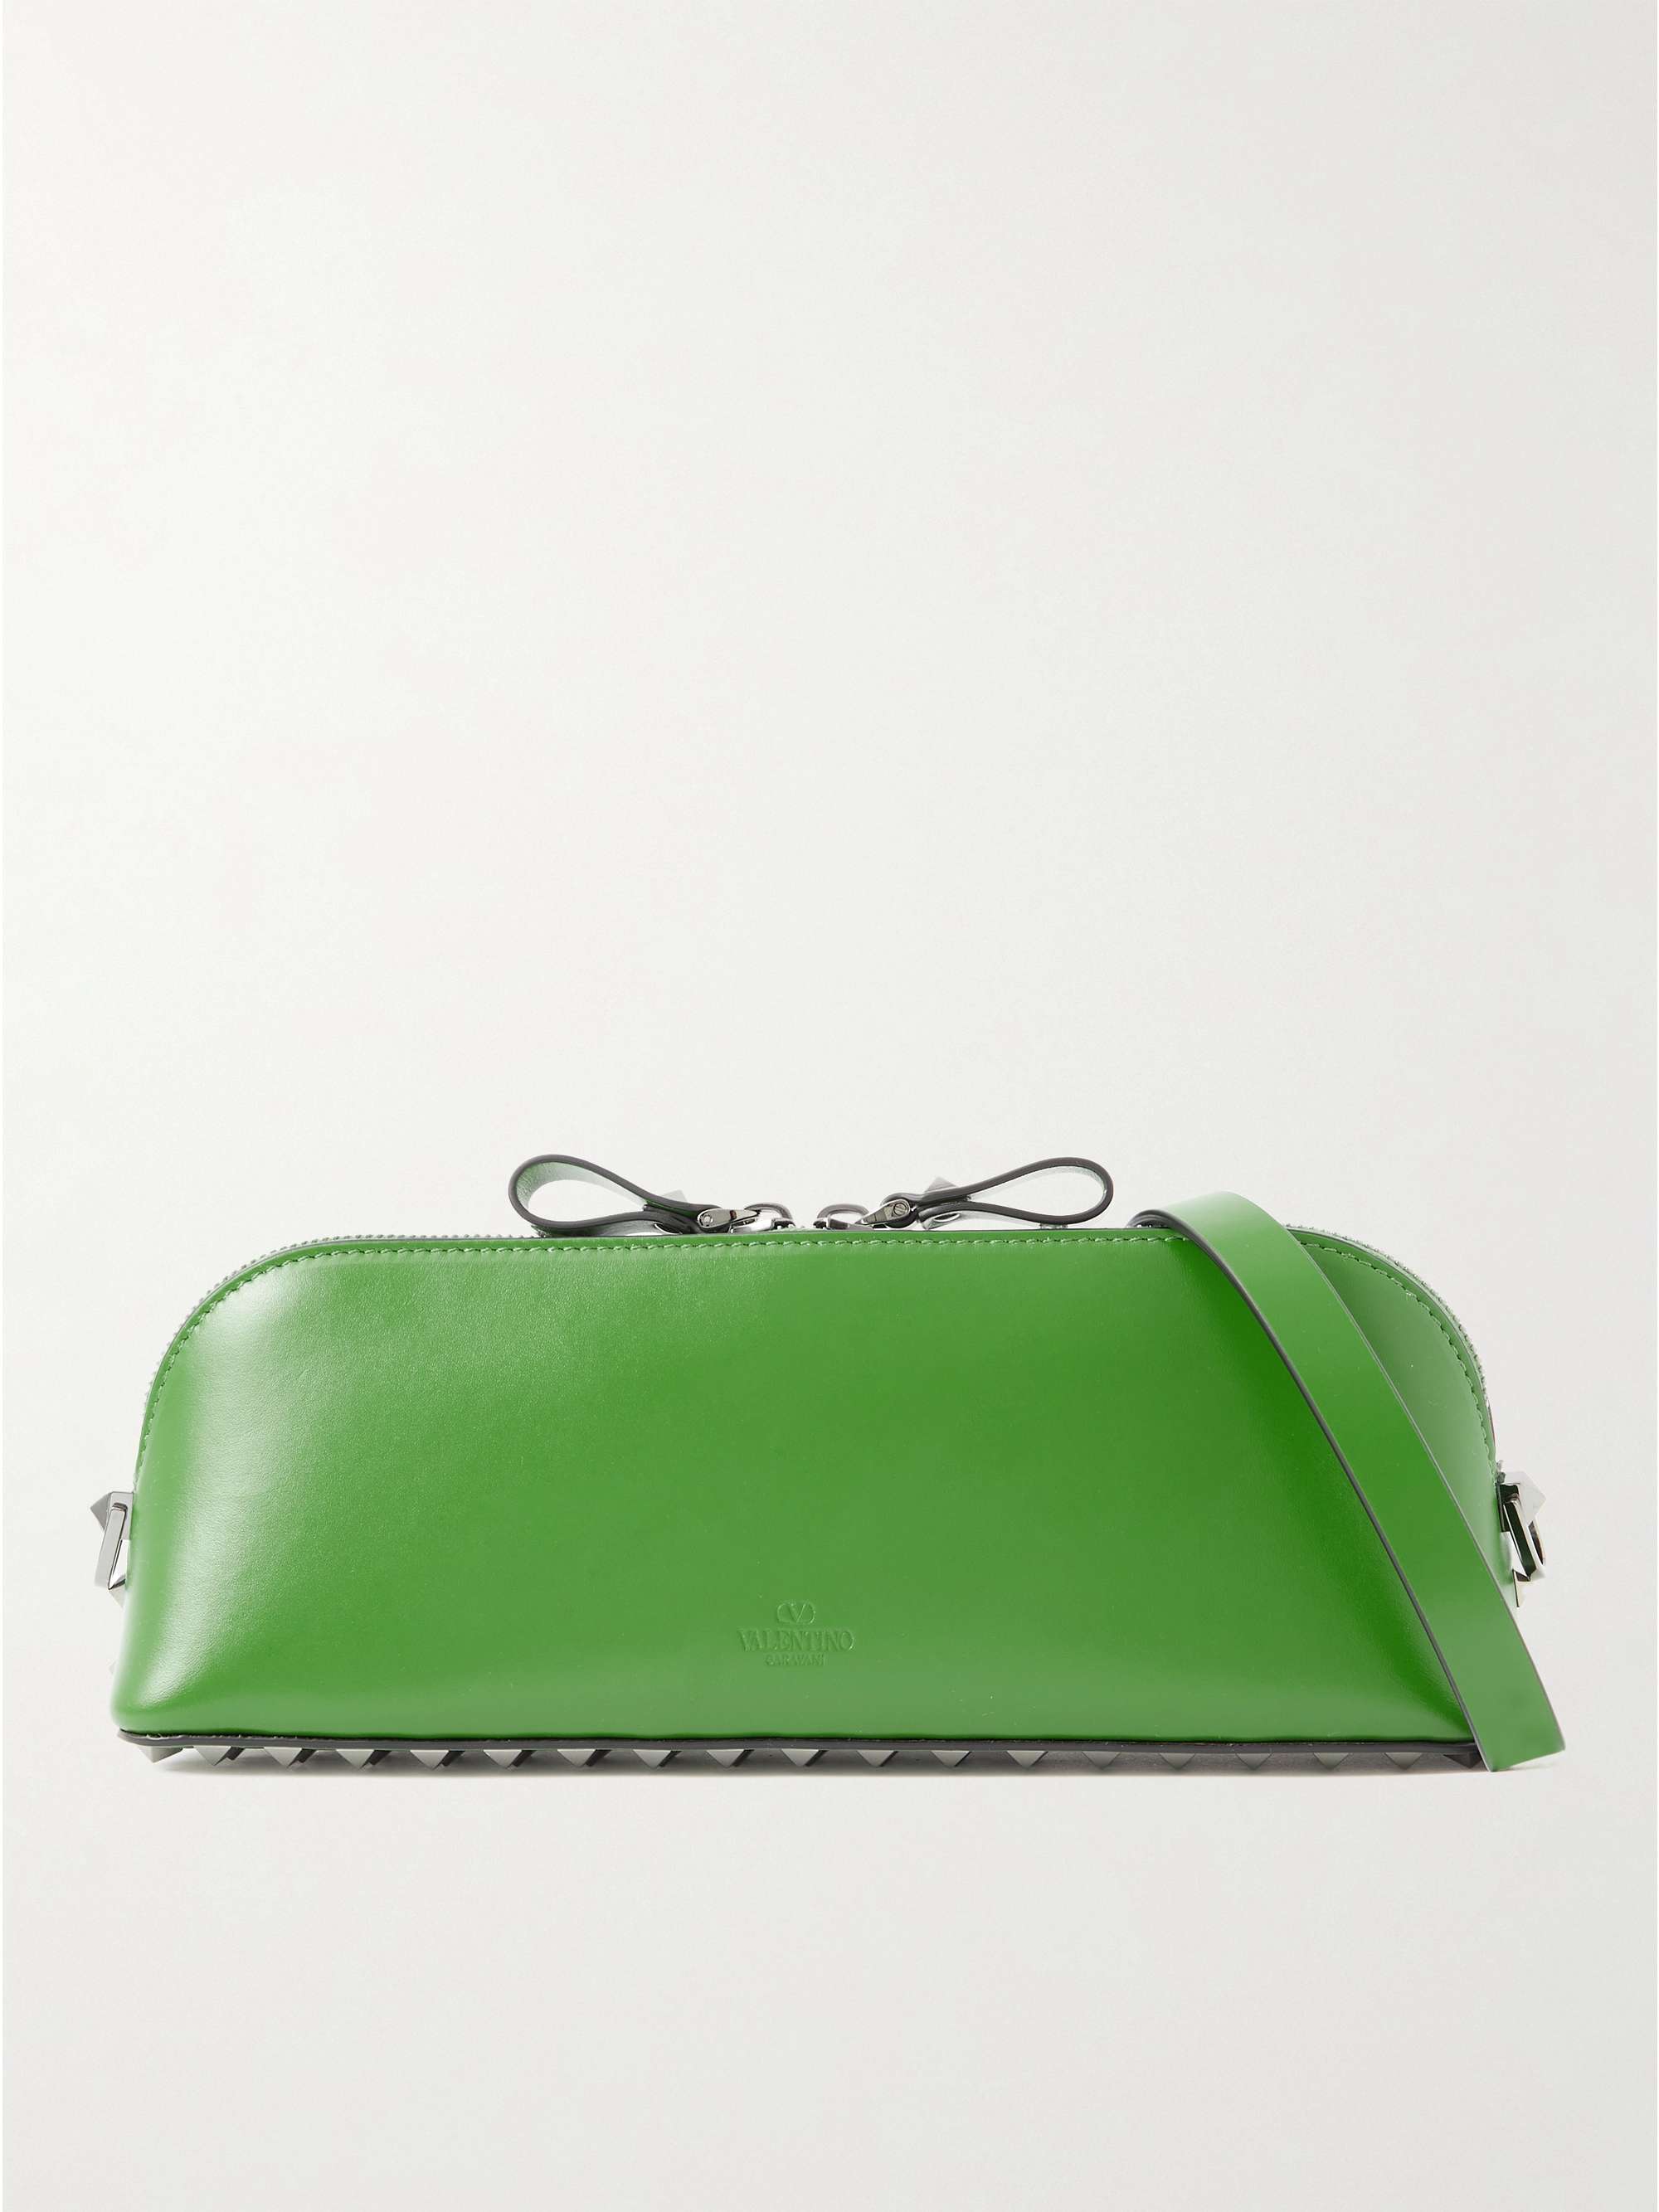 Valentino Garavani Rockstud-embellished Envelope Clutch Bag